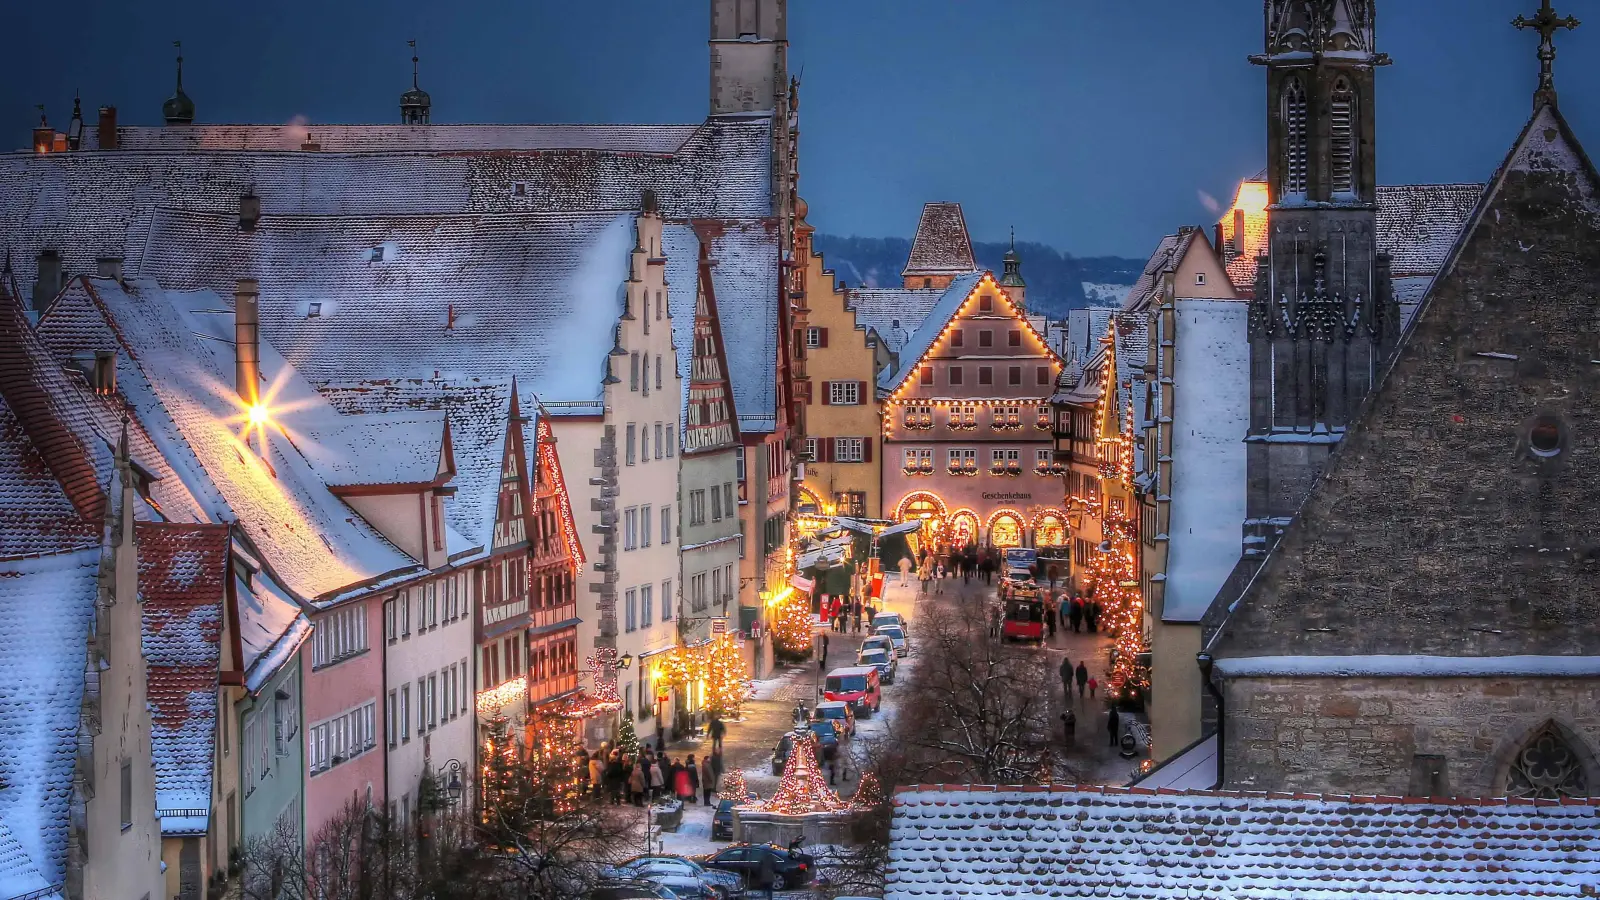 Der Reiterlesmarkt in Rothenburg ob der Tauber zählt zu den weithin bekannten Weihnachtsmärkten in Deutschland. (Archivbild: RTS/Willi Pfitzinger)